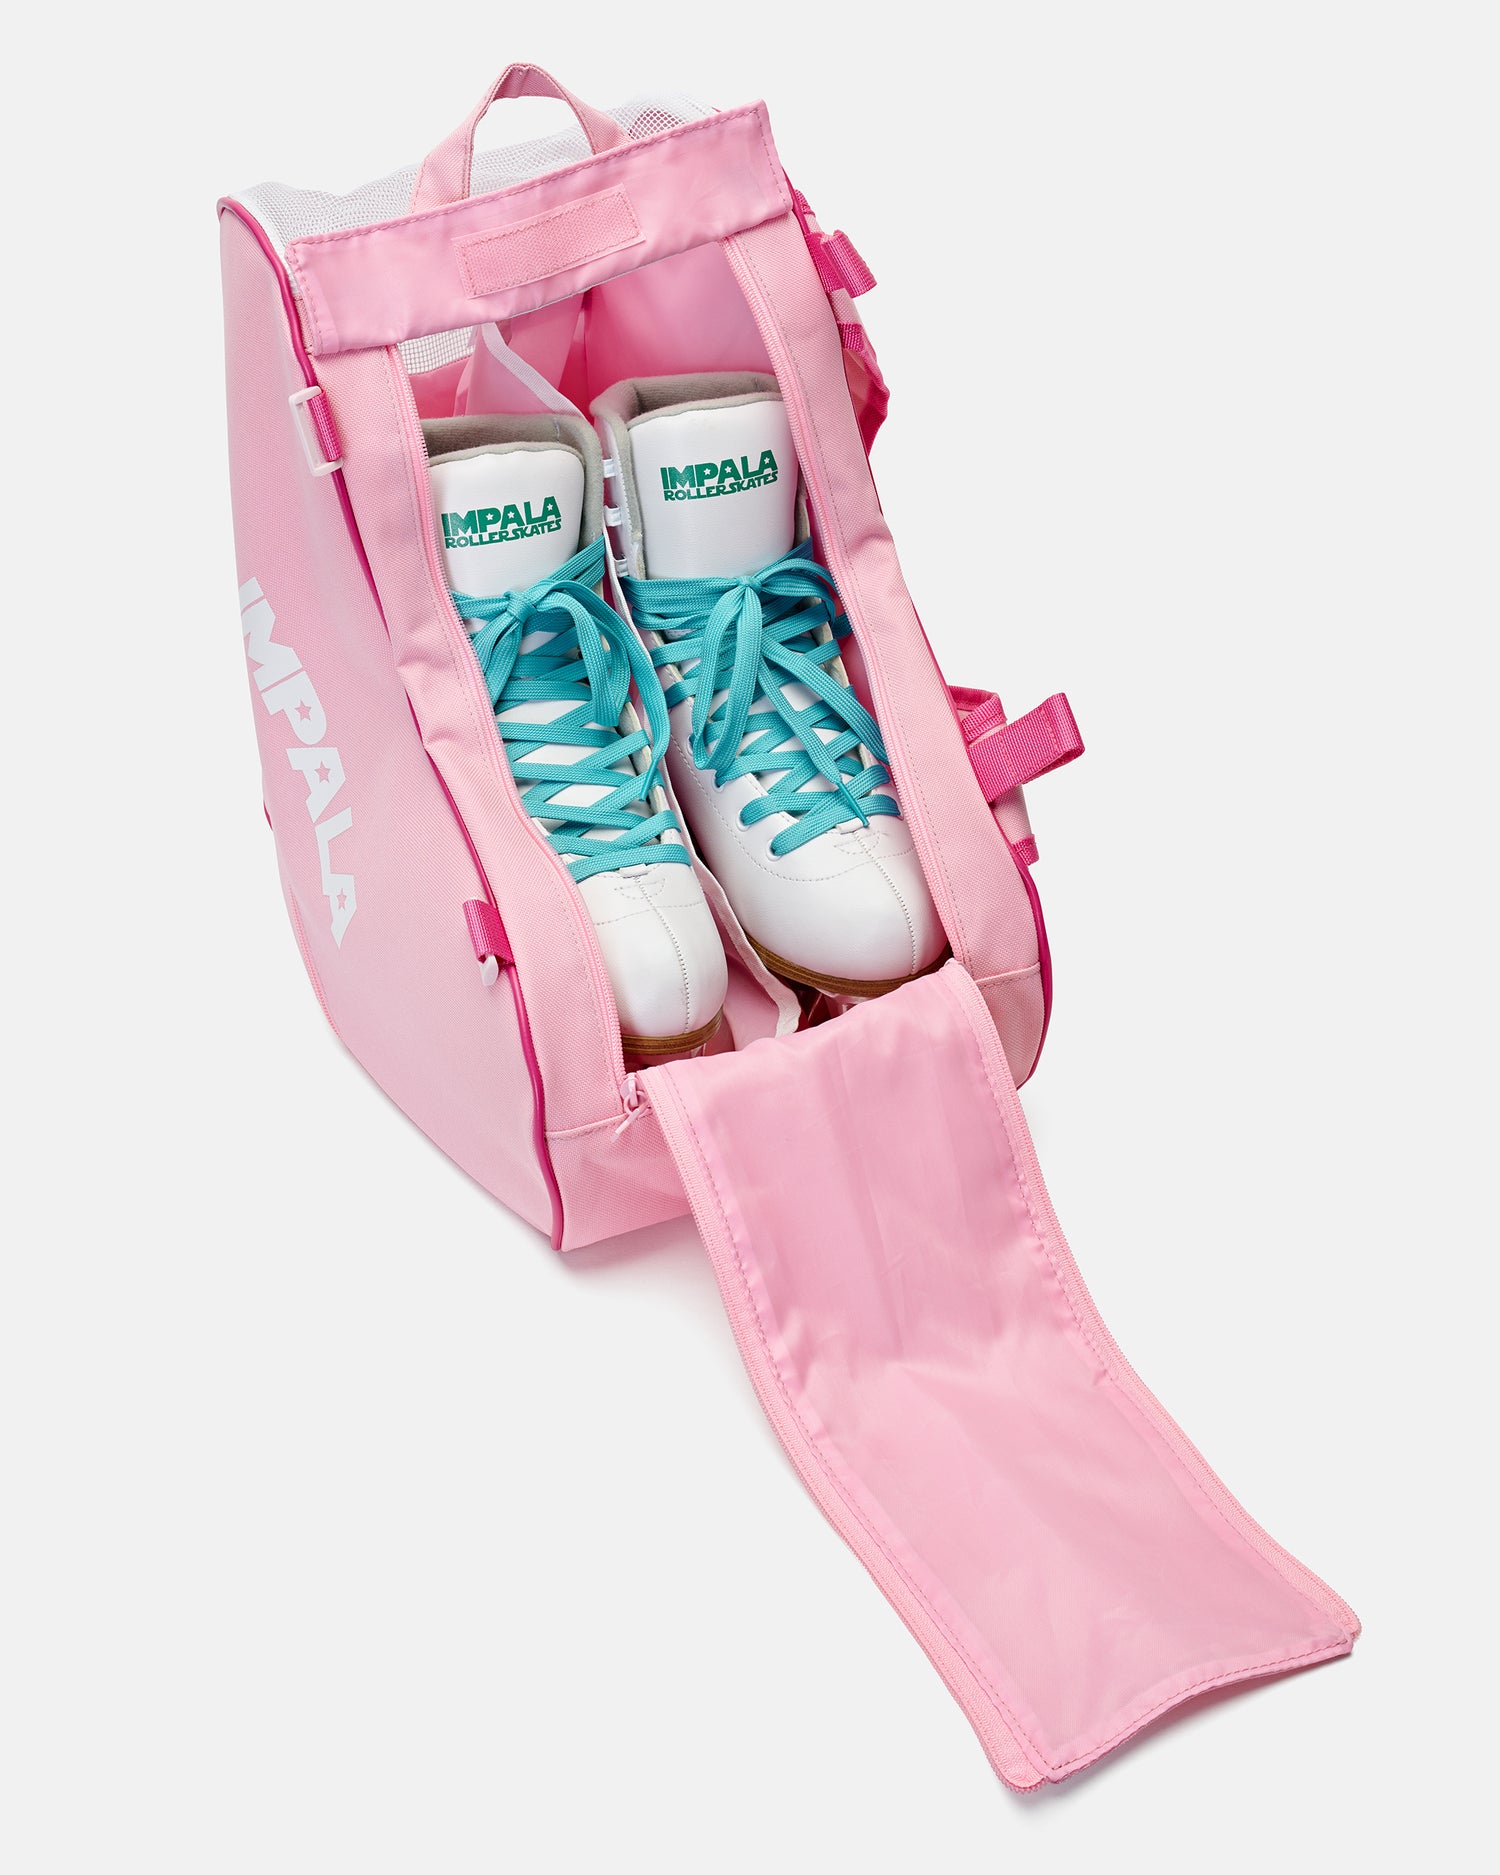 Beginner Kids Adjustable Roller Skates SZ Medium 3-6 w/Skate Bag Girl Gift  Set | eBay